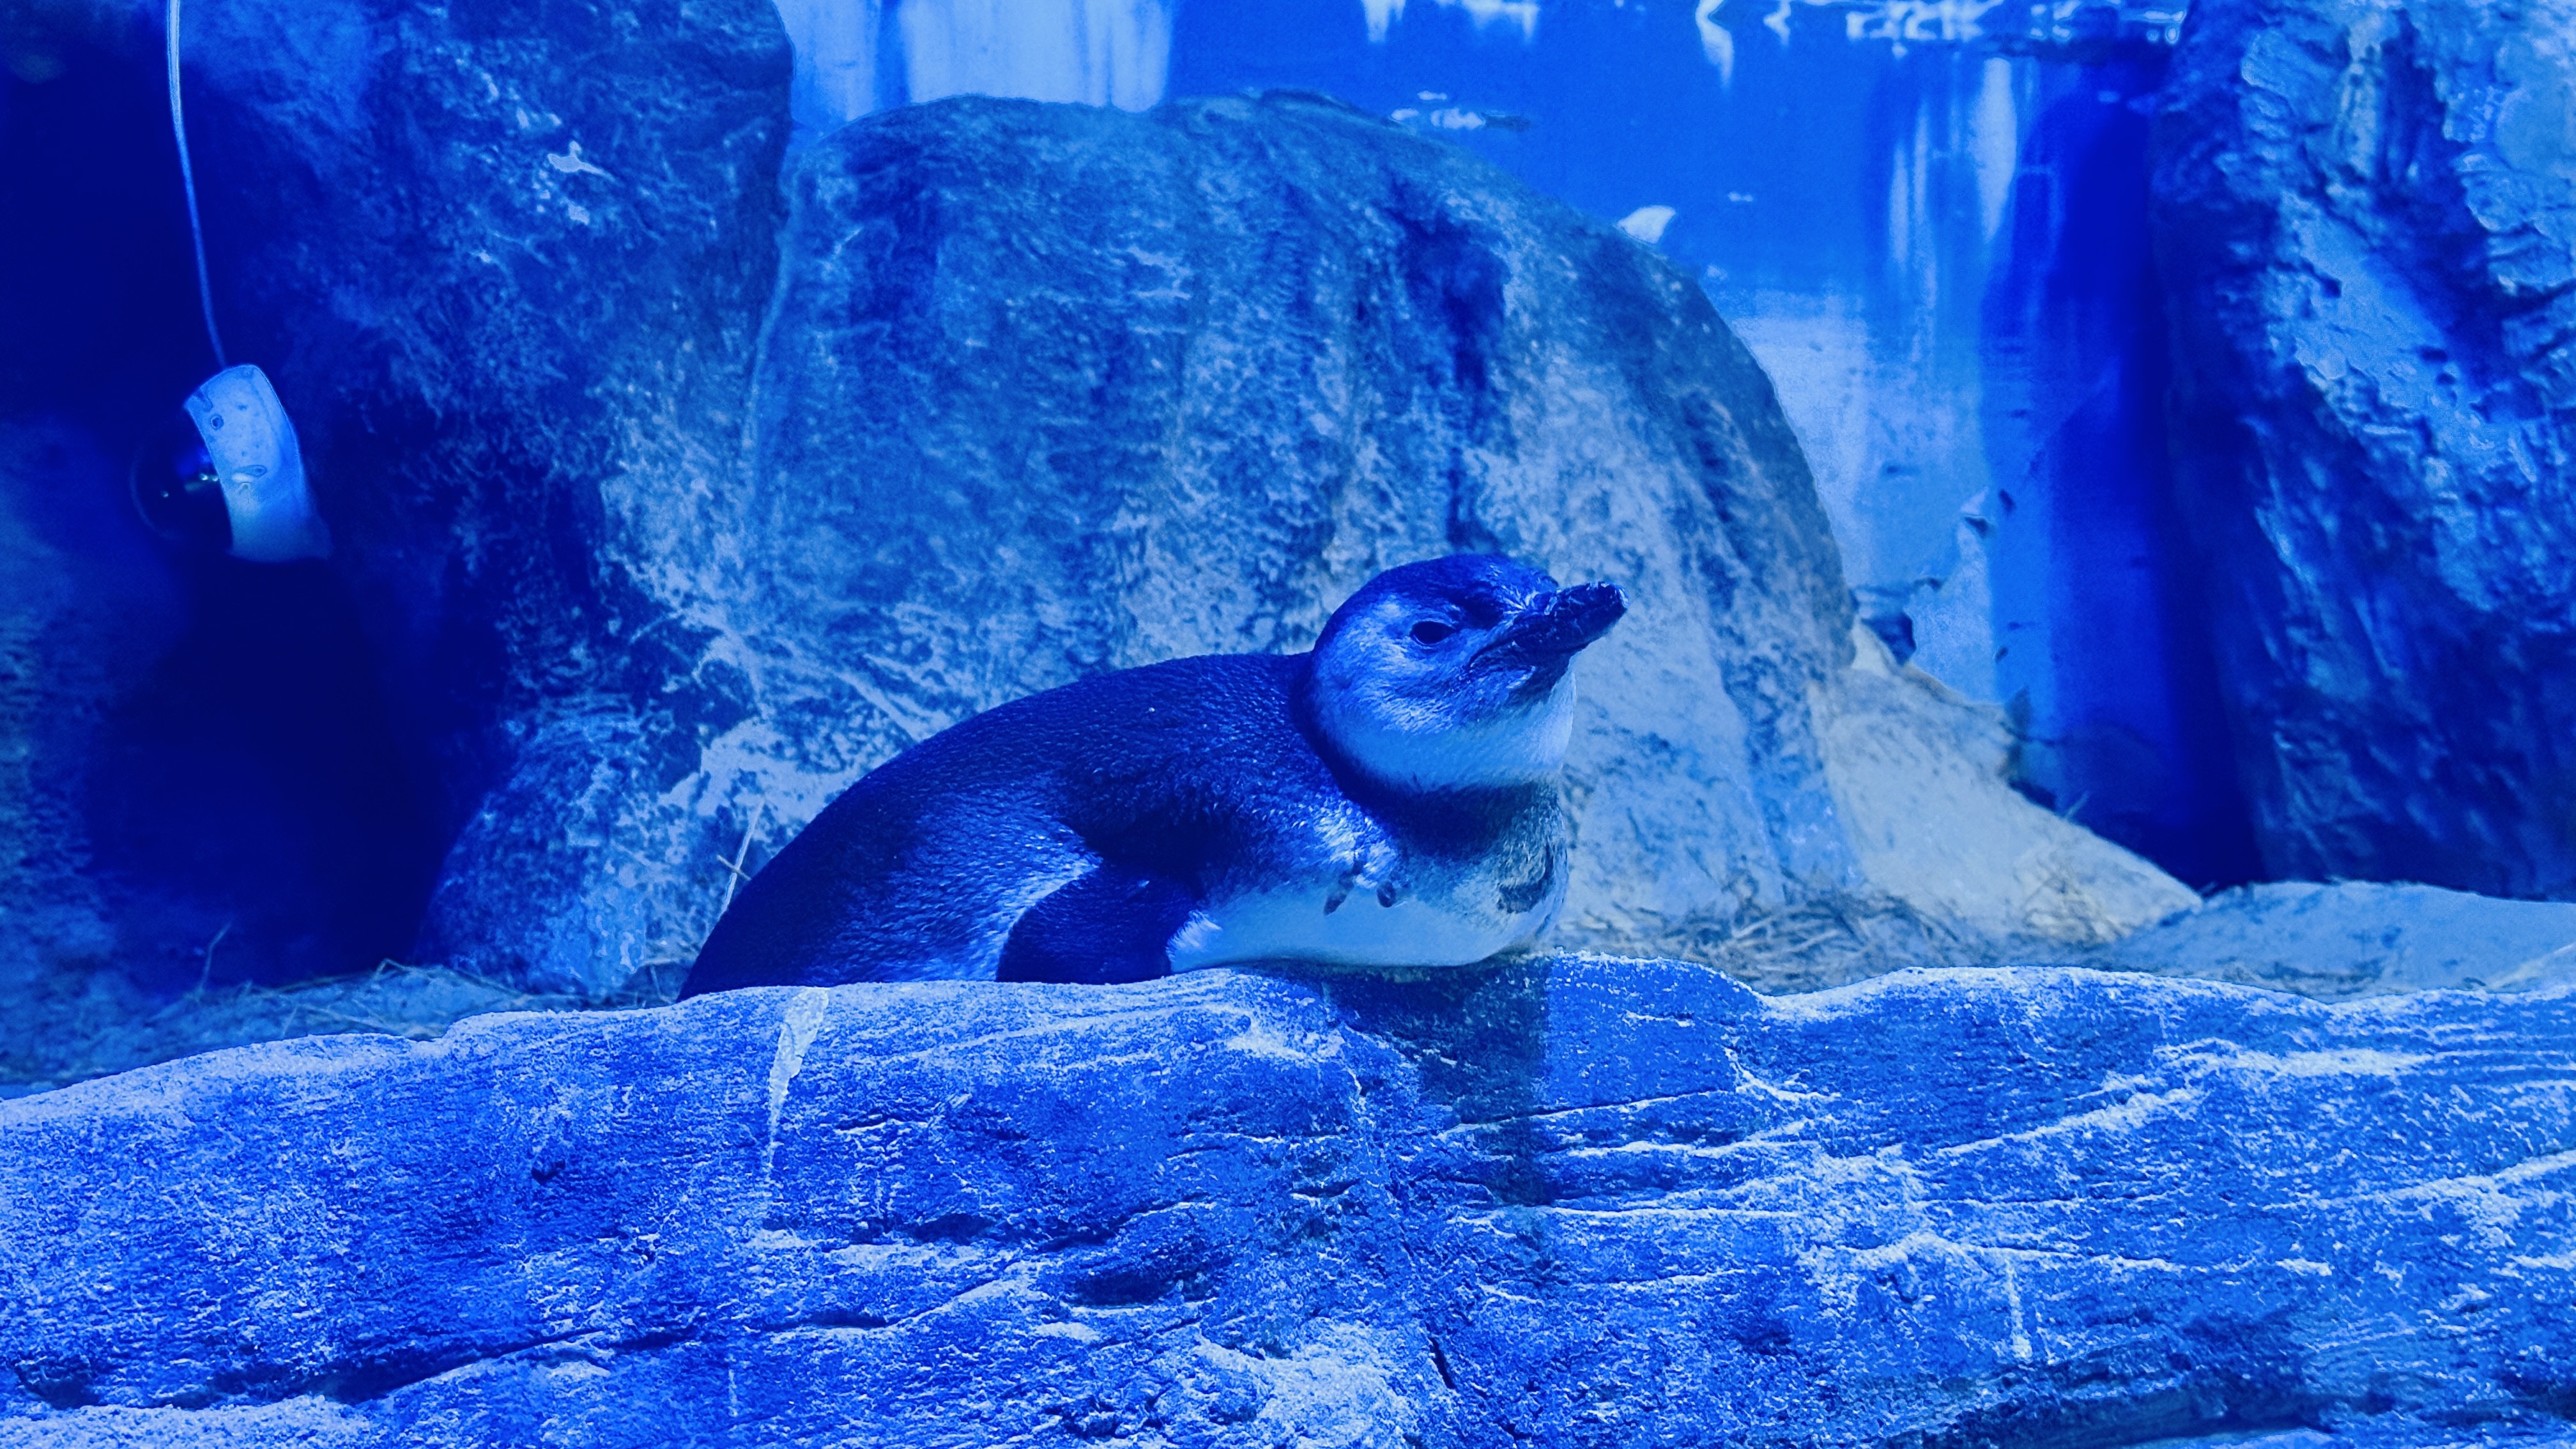 Chá revelação debaixo d'água divulga sexo do 1° pinguim nascido em aquário de Balneário Camboriú; VÍDEO